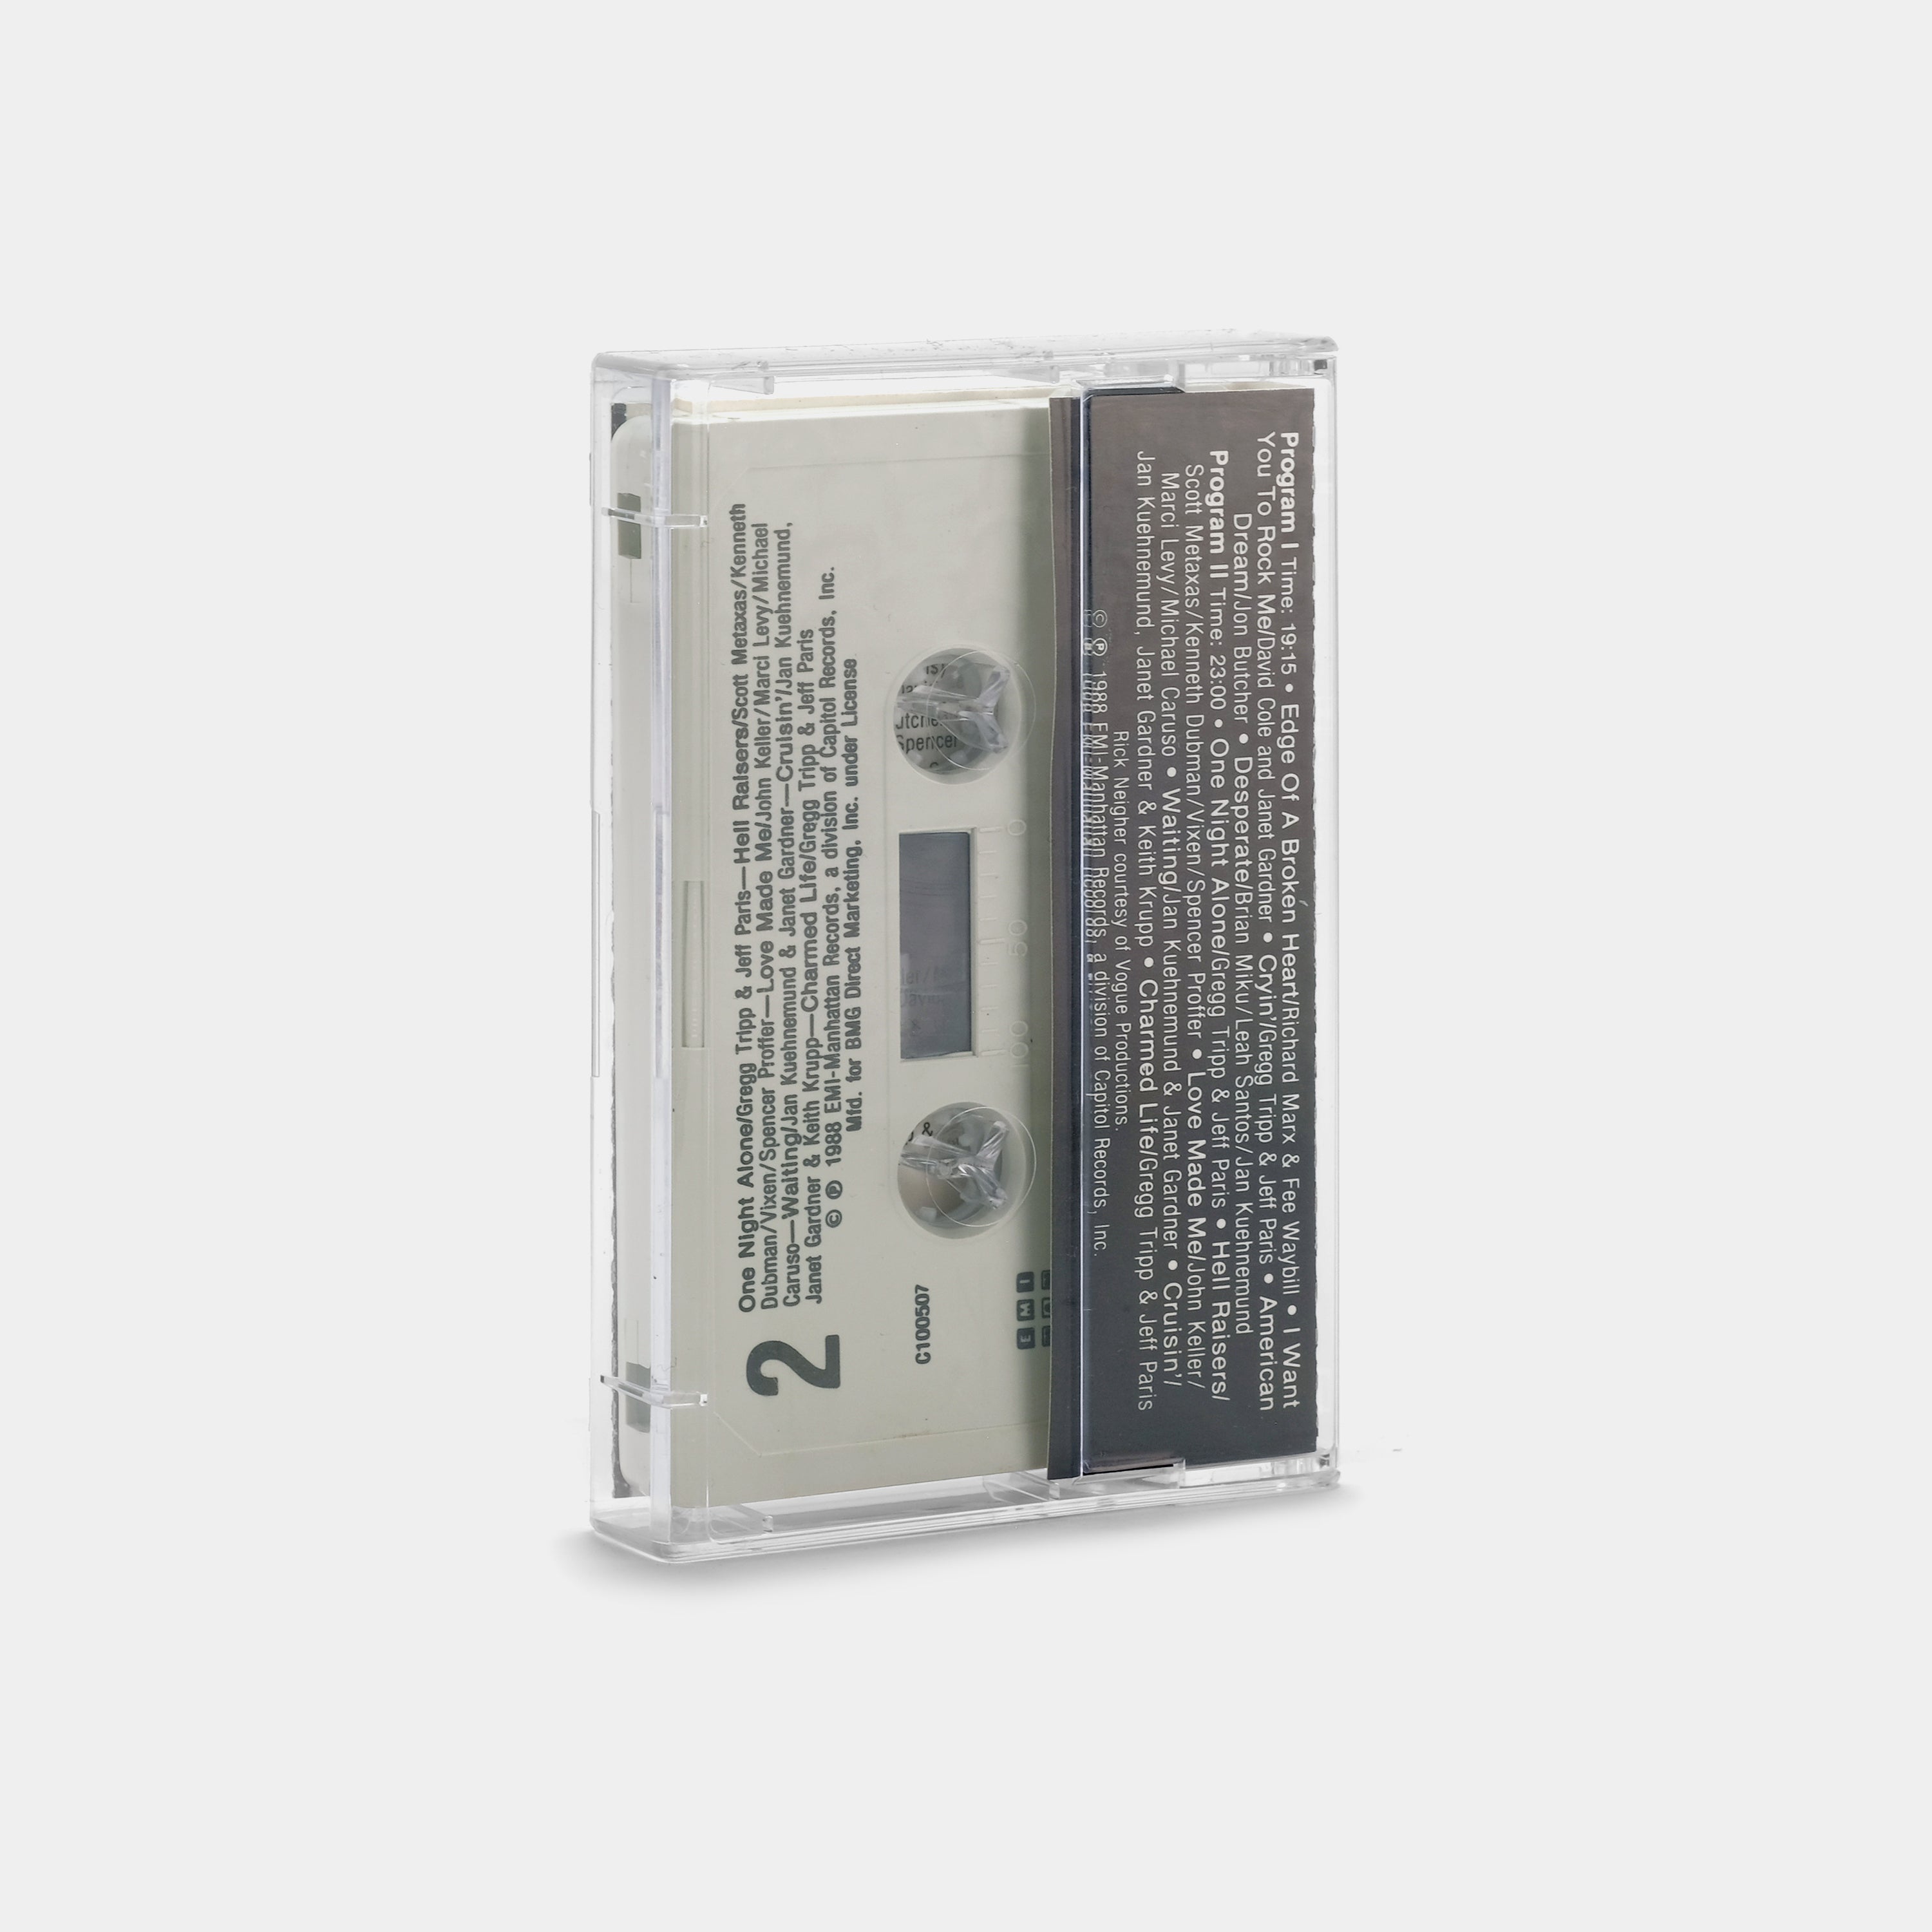 Vixen - Vixen Cassette Tape